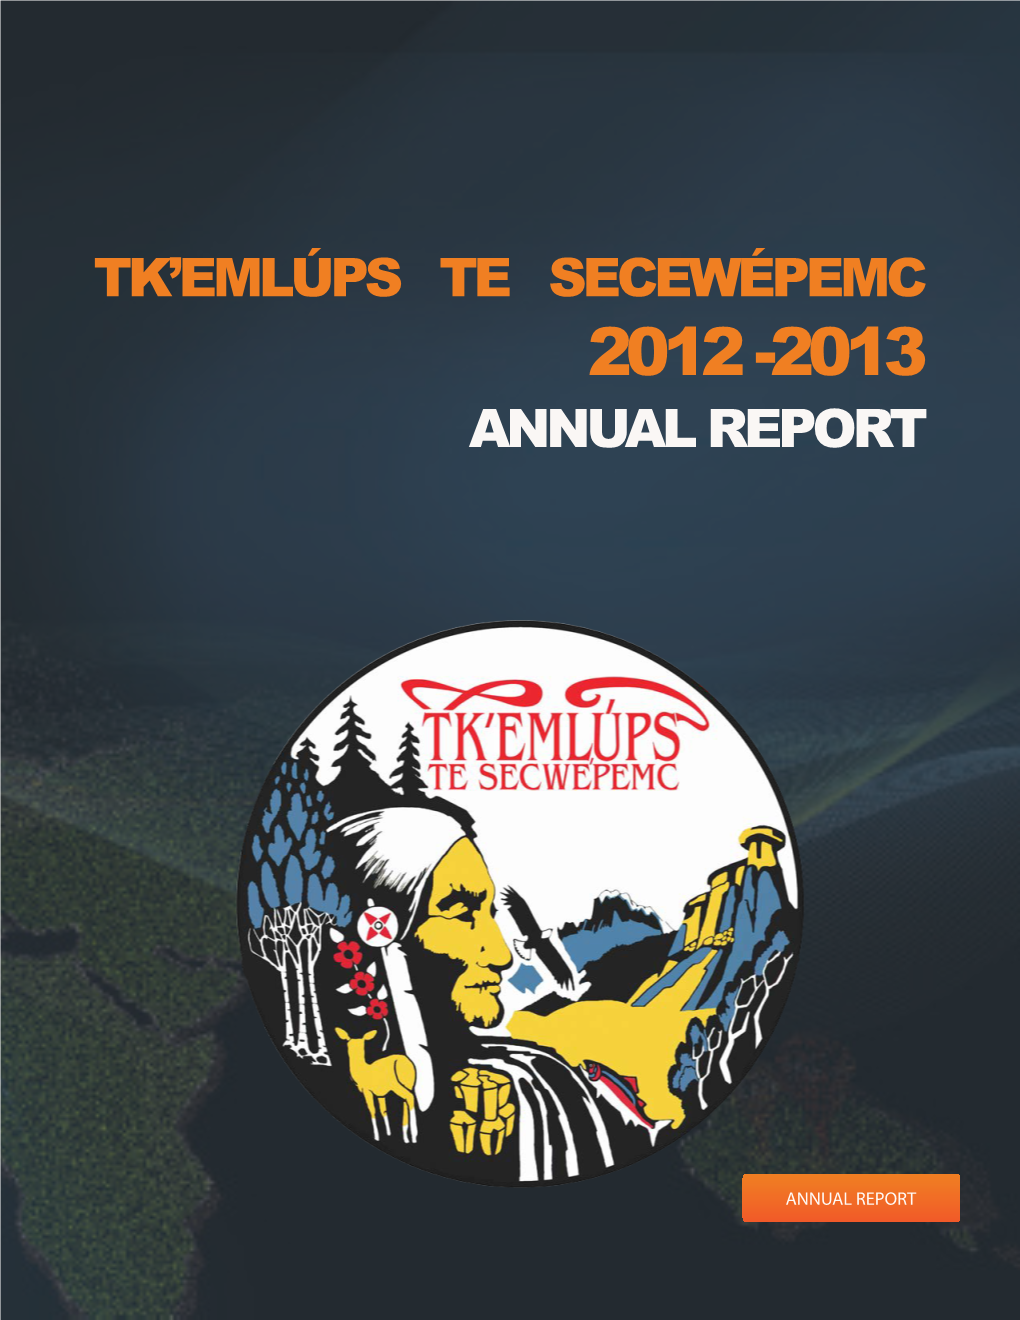 Tk'emlúps Te Secewépemc Annual Report